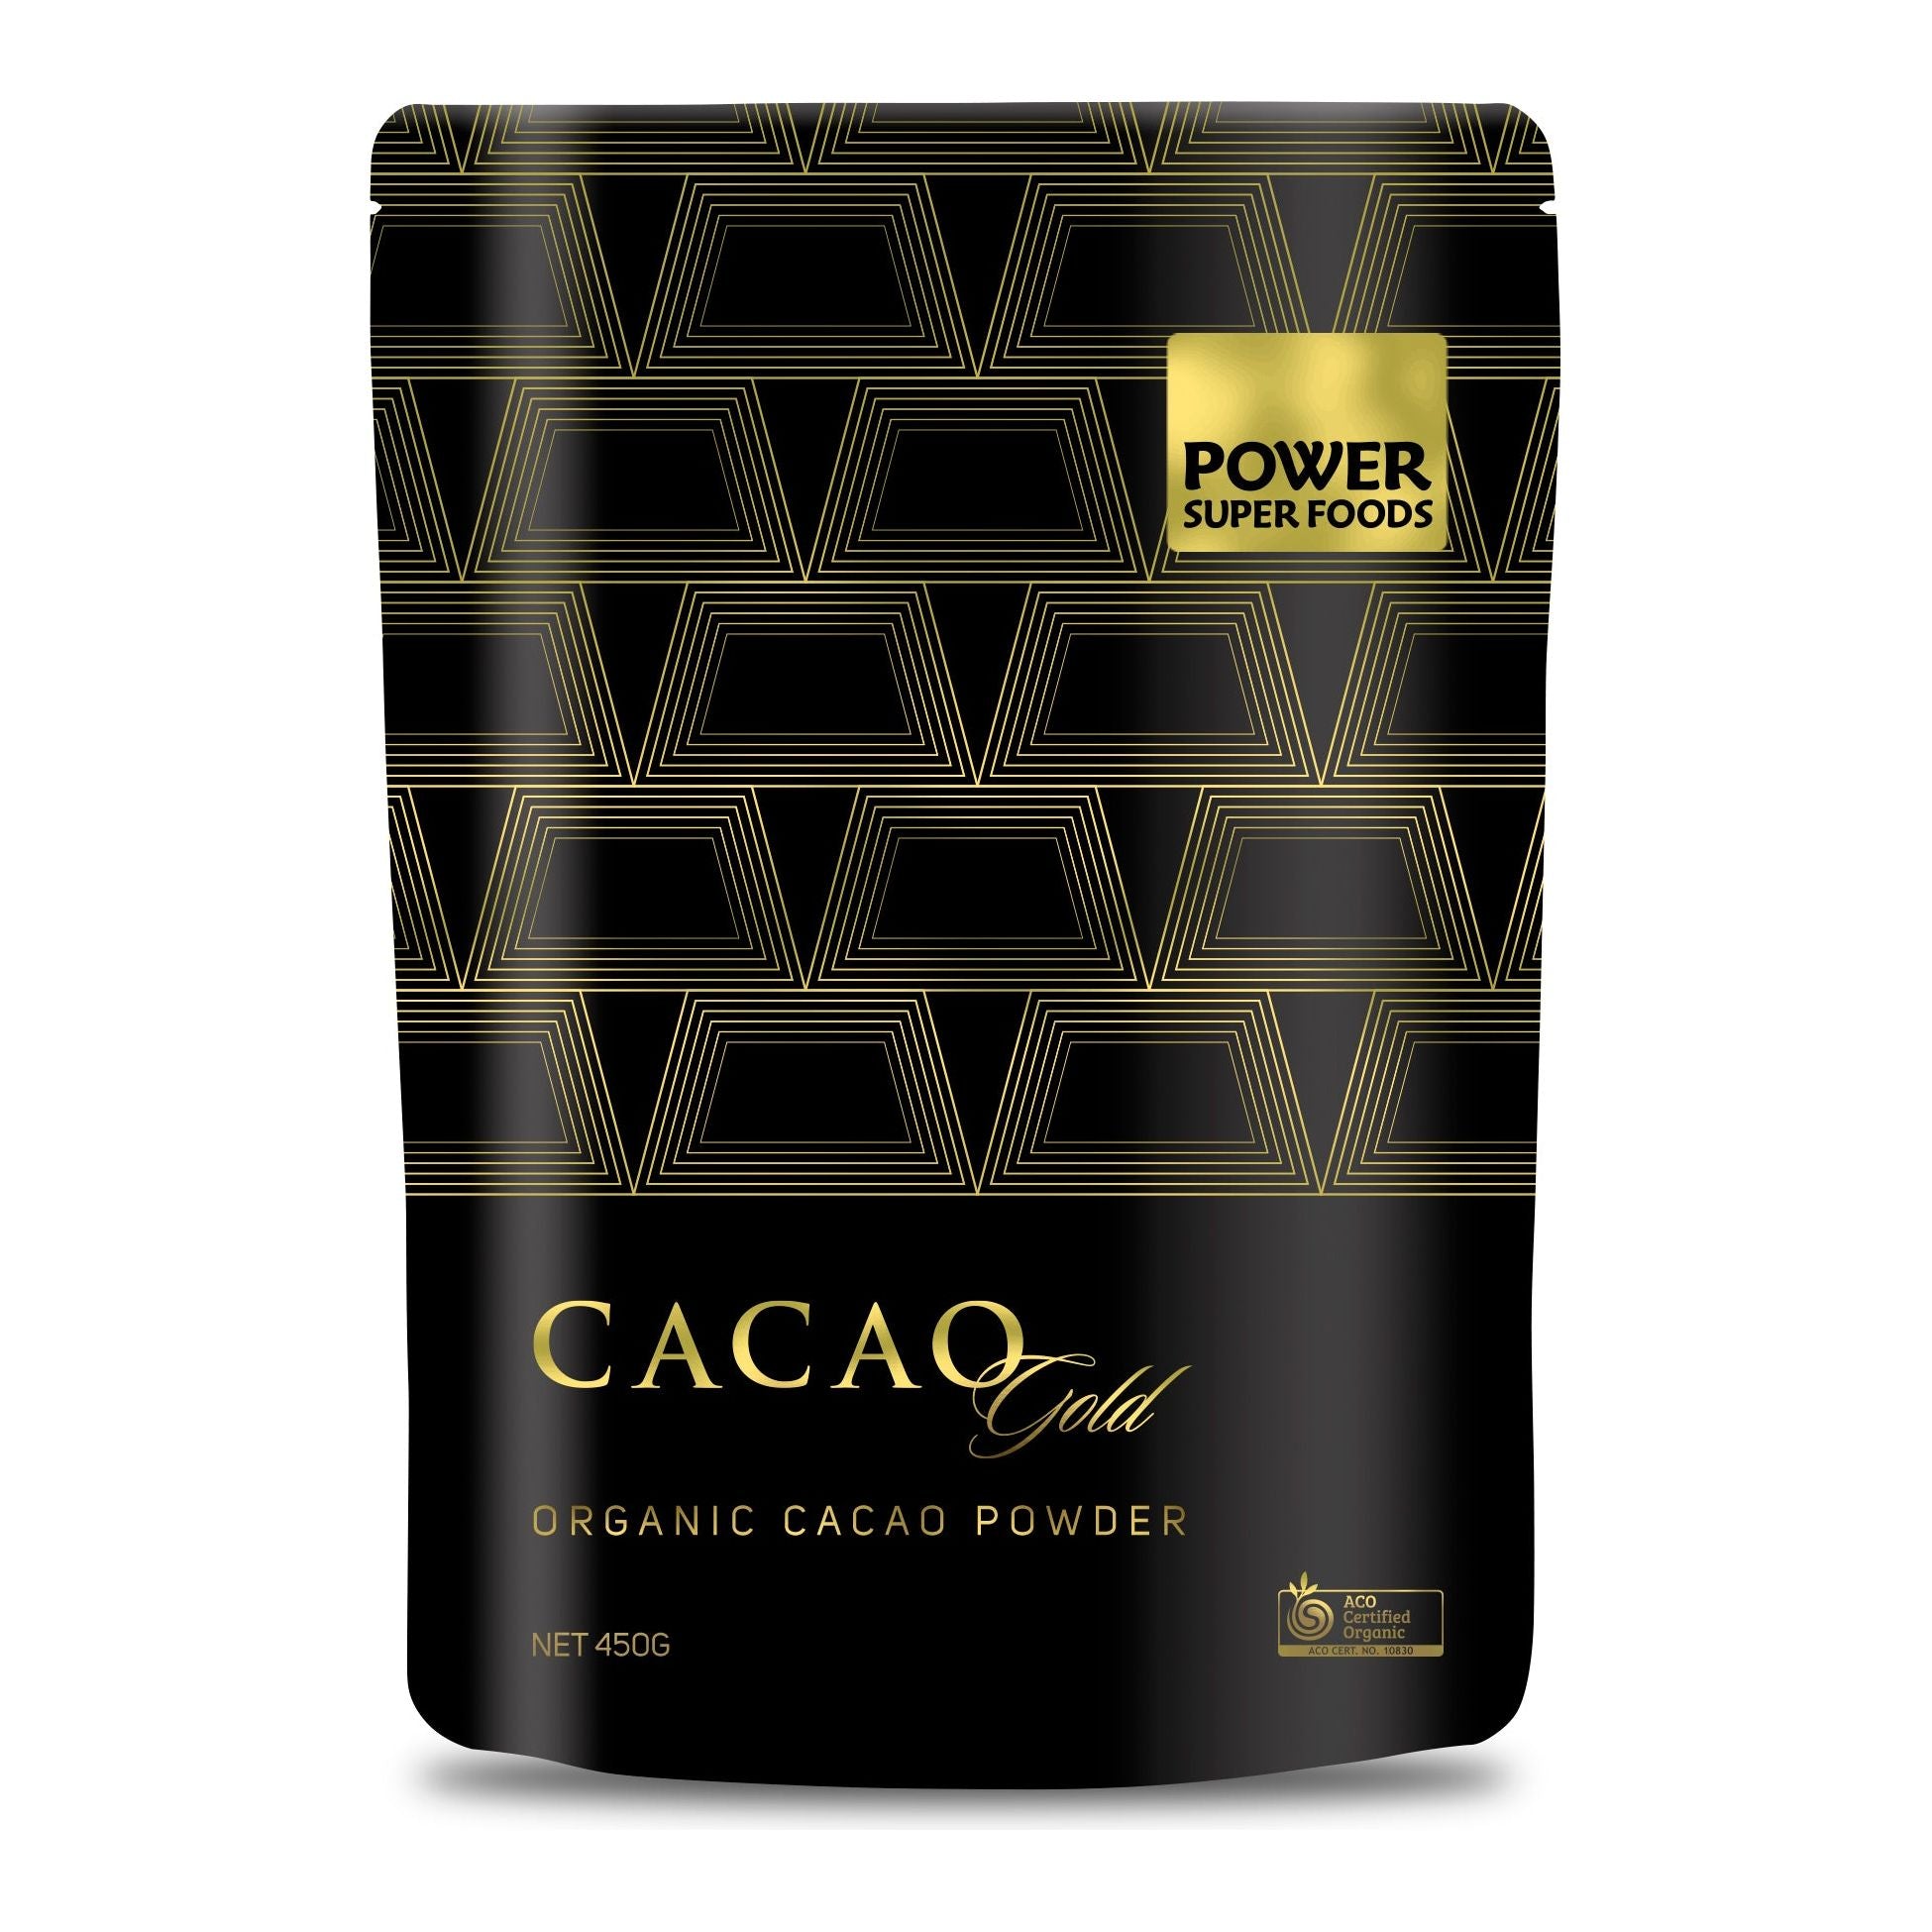 Power Super Foods Cacao Gold Org Cacao Powder 450g